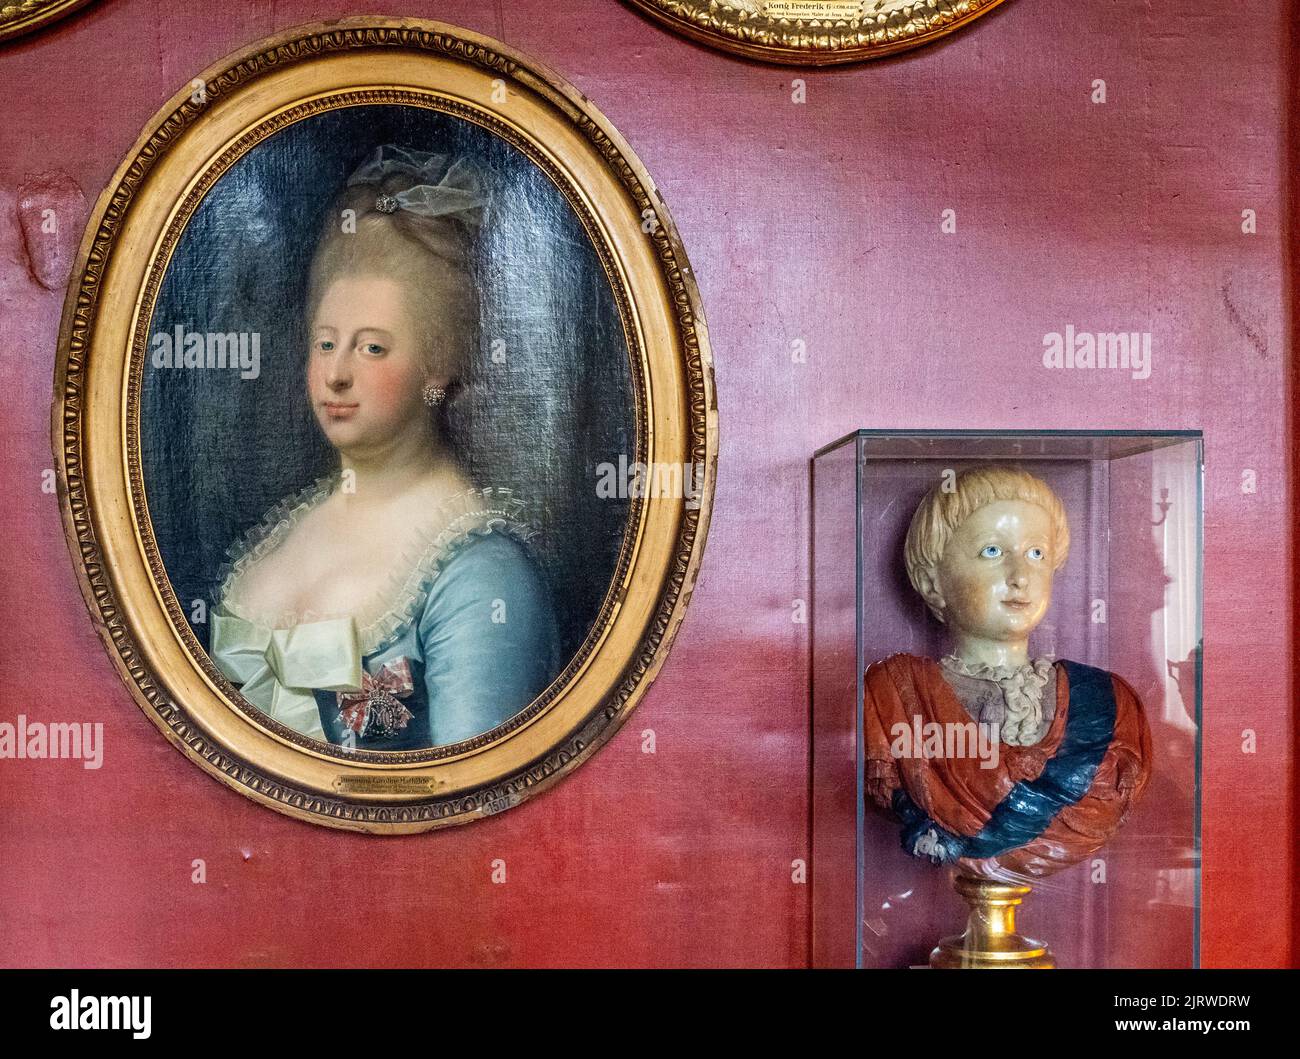 Retrato de la reina Caroline Mathilde de Dinamarca y Noruega junto a un busto de cera de su hijo Frederik VI en Rosenborg Slot Copenhague Dinamarca Foto de stock